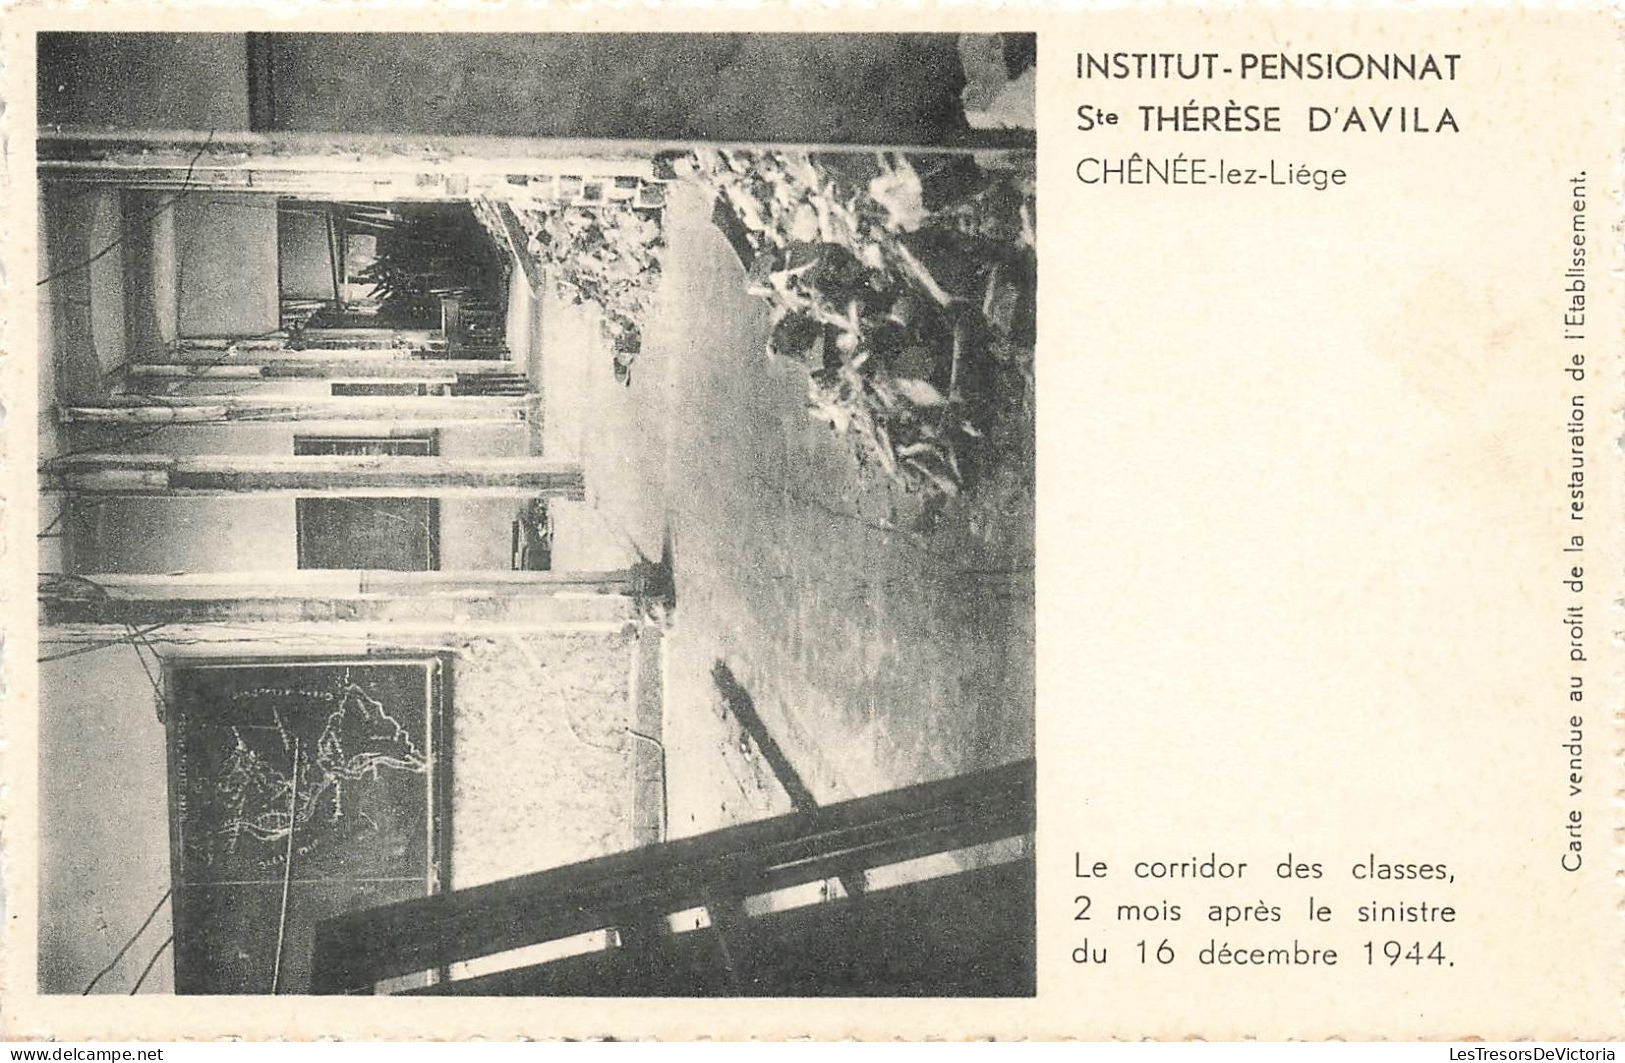 BELGIQUE - Chênée-Lez-Liège - Institut - Pensionnat Sainte Thérèse D'Avila - Carte Postale Ancienne - Liège